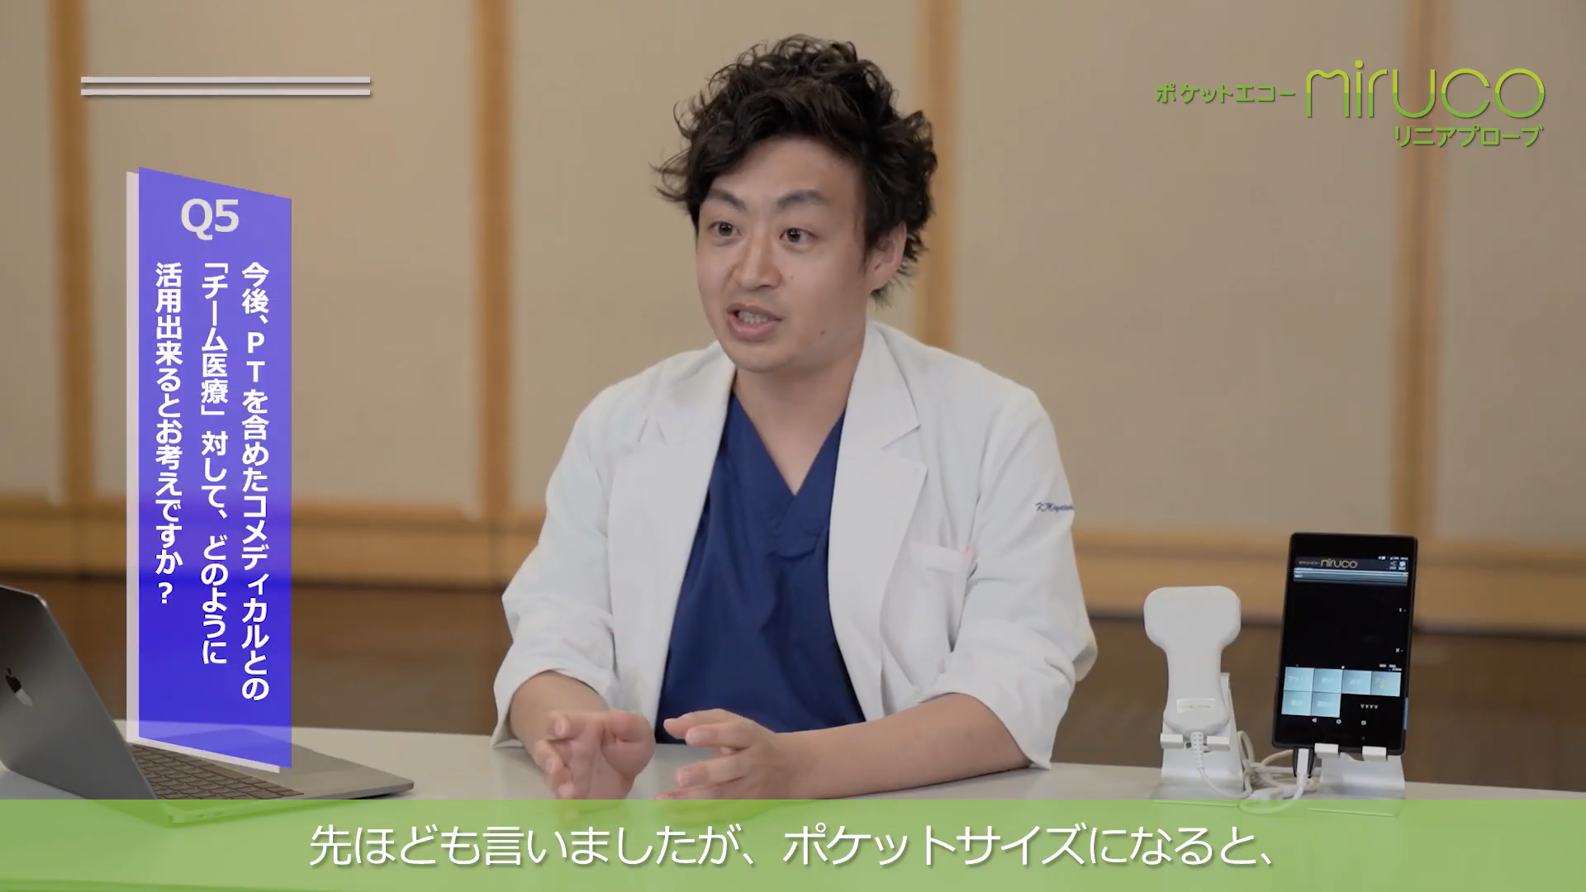 宮武 和馬先生(横浜市立大学 整形外科) インタビュー動画